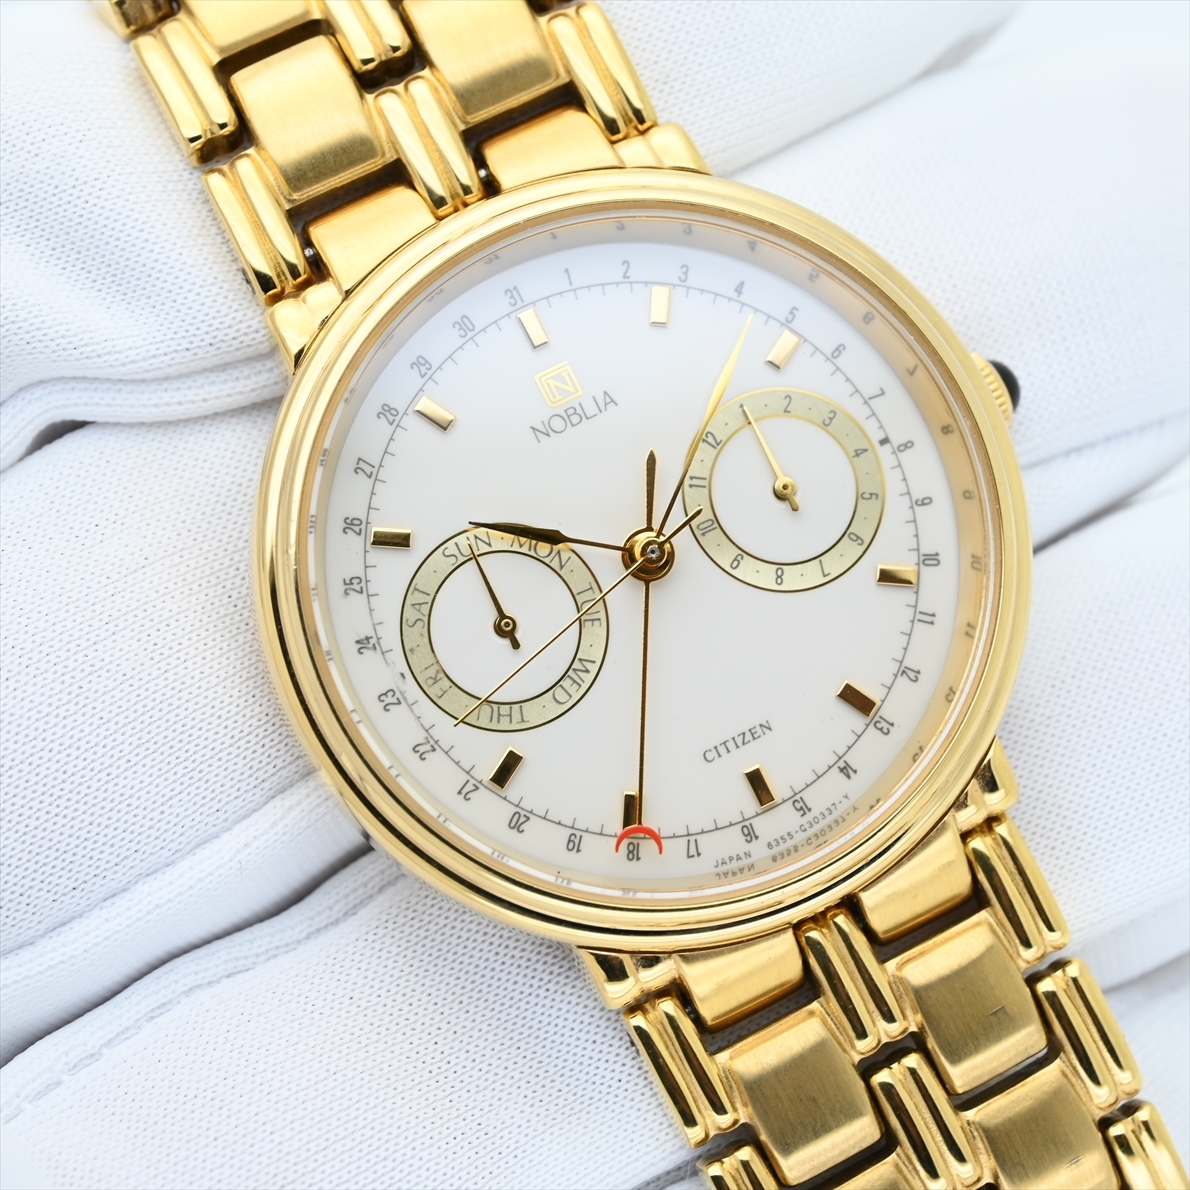 希少 シチズン/NOBLIA◆トリプルカレンダー 1988年製造 クォーツ メンズ腕時計 ゴールド色/金色 6355-G30160 レトロ ビンテージ 昭和63年